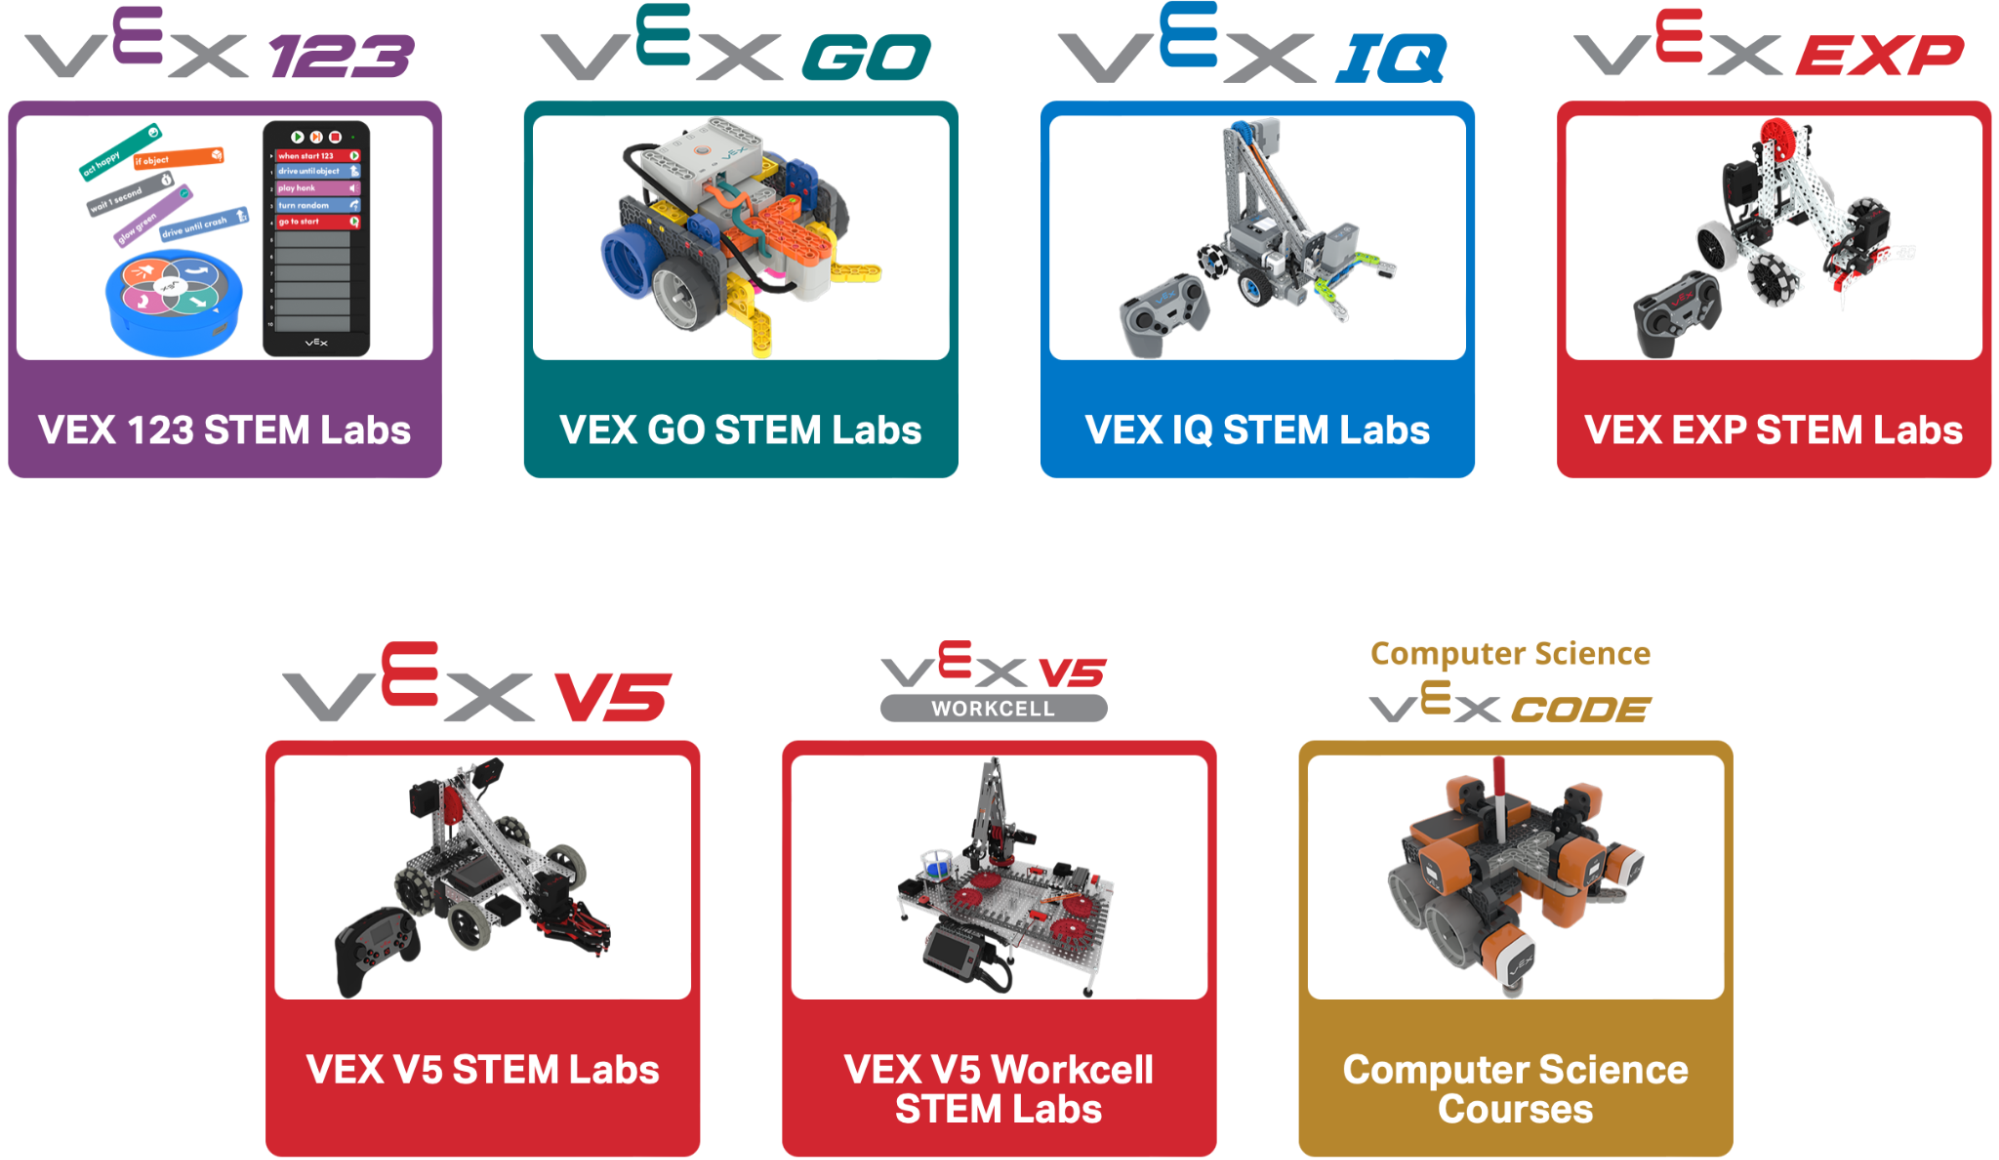 VEX Platforms